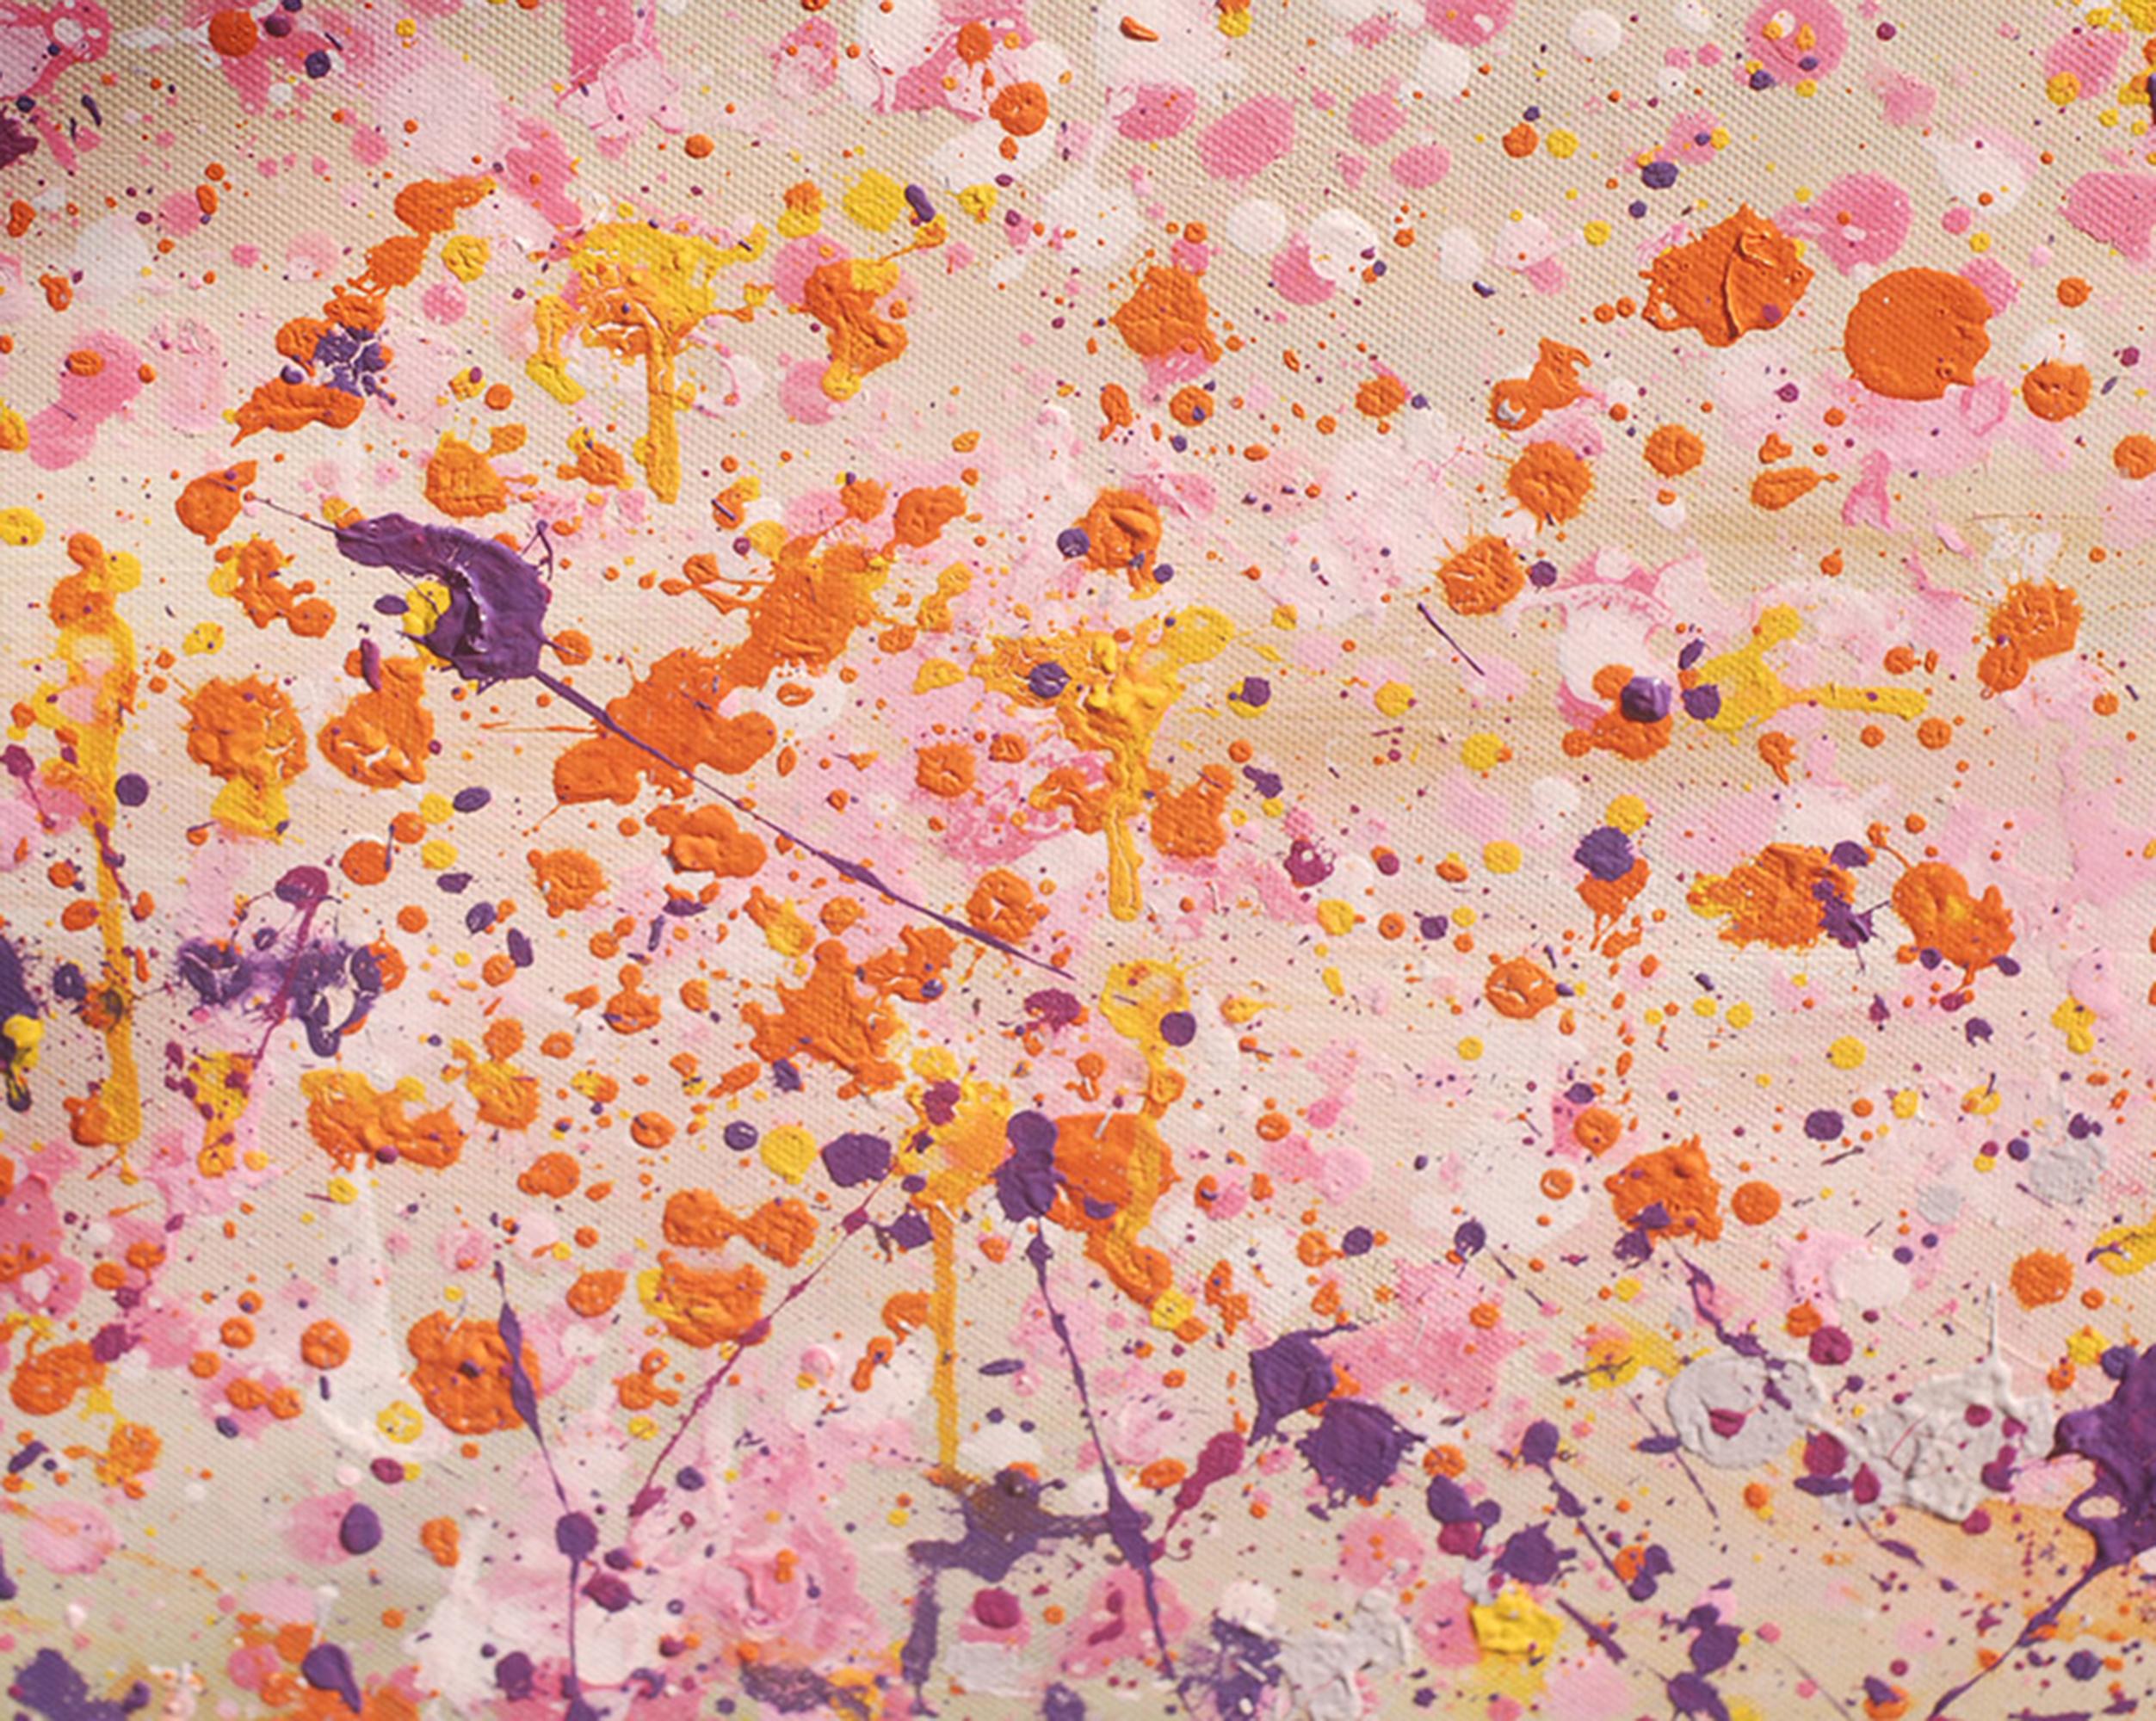 Le printemps rose - Contemporain Painting par Nguyen Xuan Anh